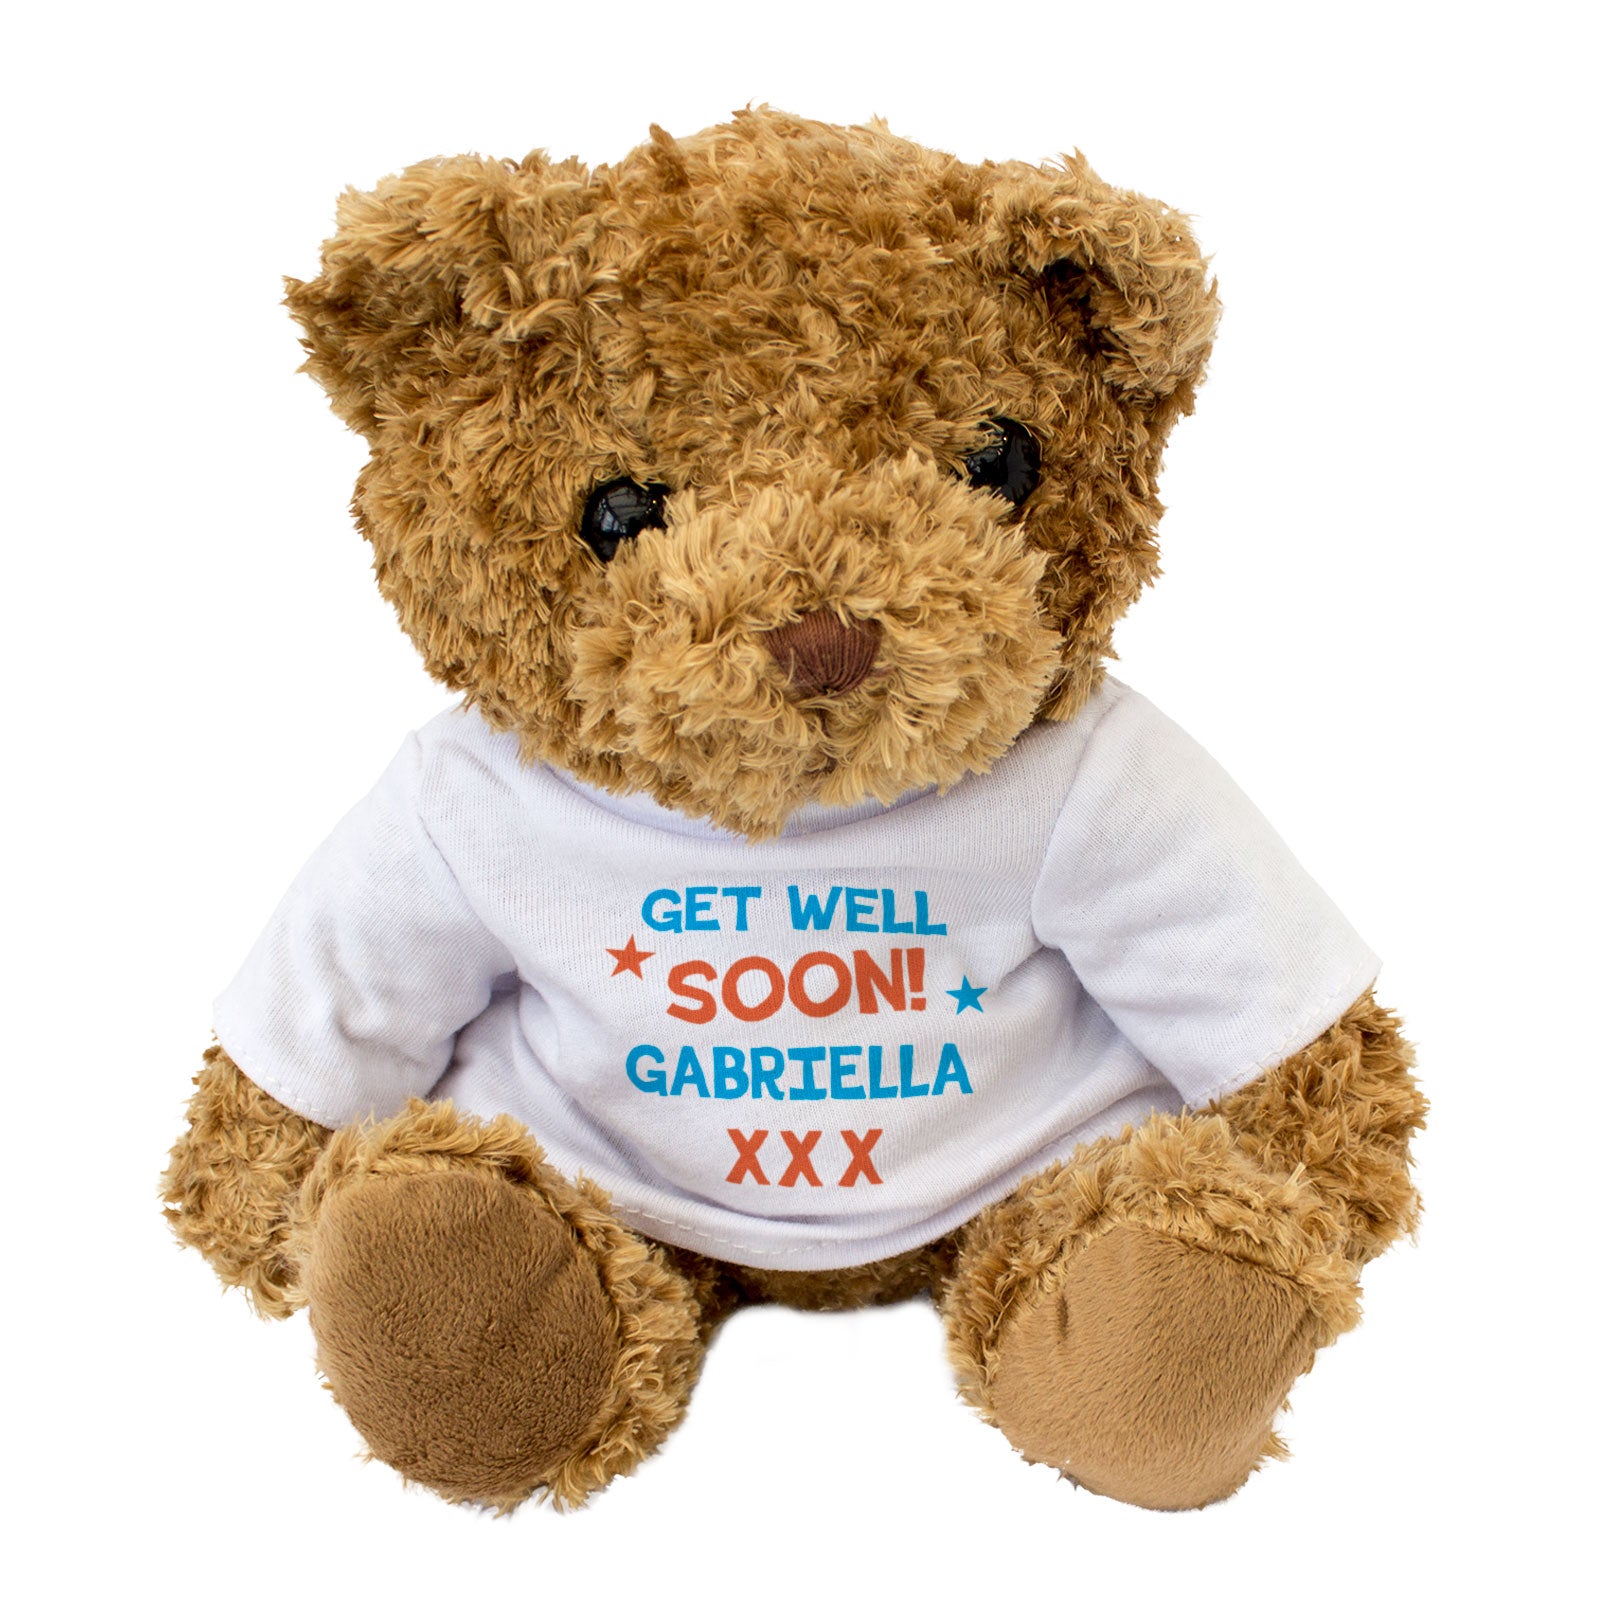 Get Well Soon Gabriella - Teddy Bear